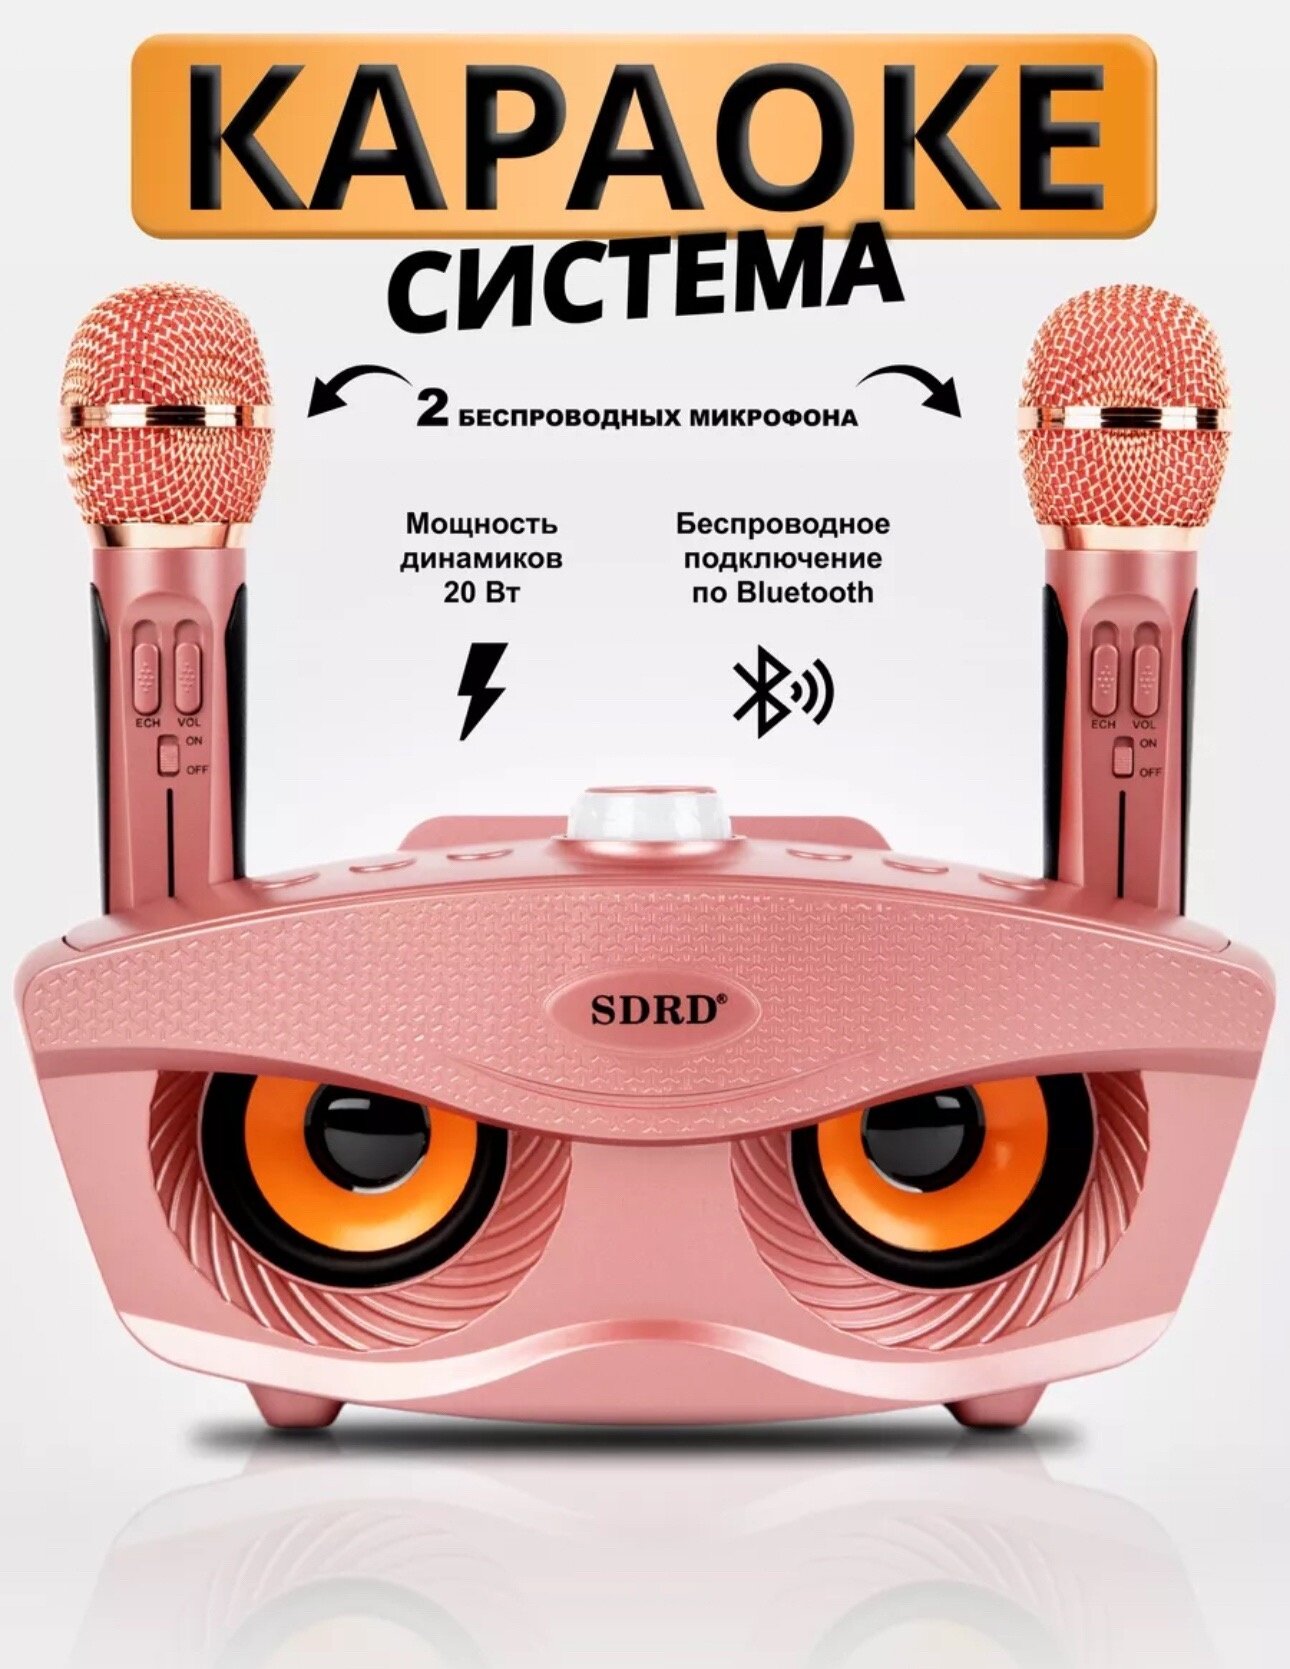 Караоке-система SDRD с двумя микрофонами для дома, розовая